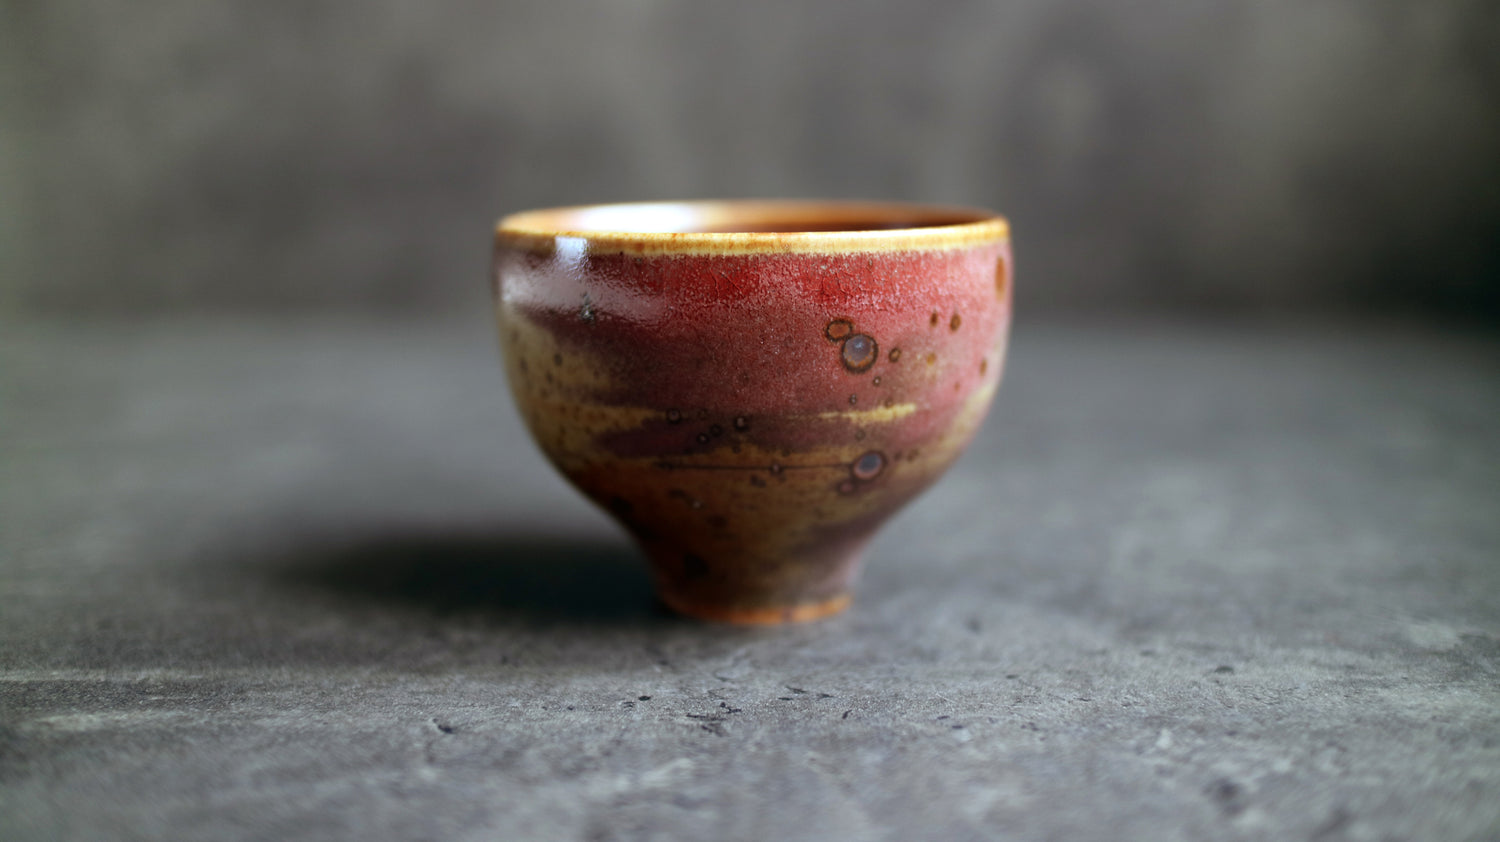 Ceramic Tea Cup "Smoked Salmon"